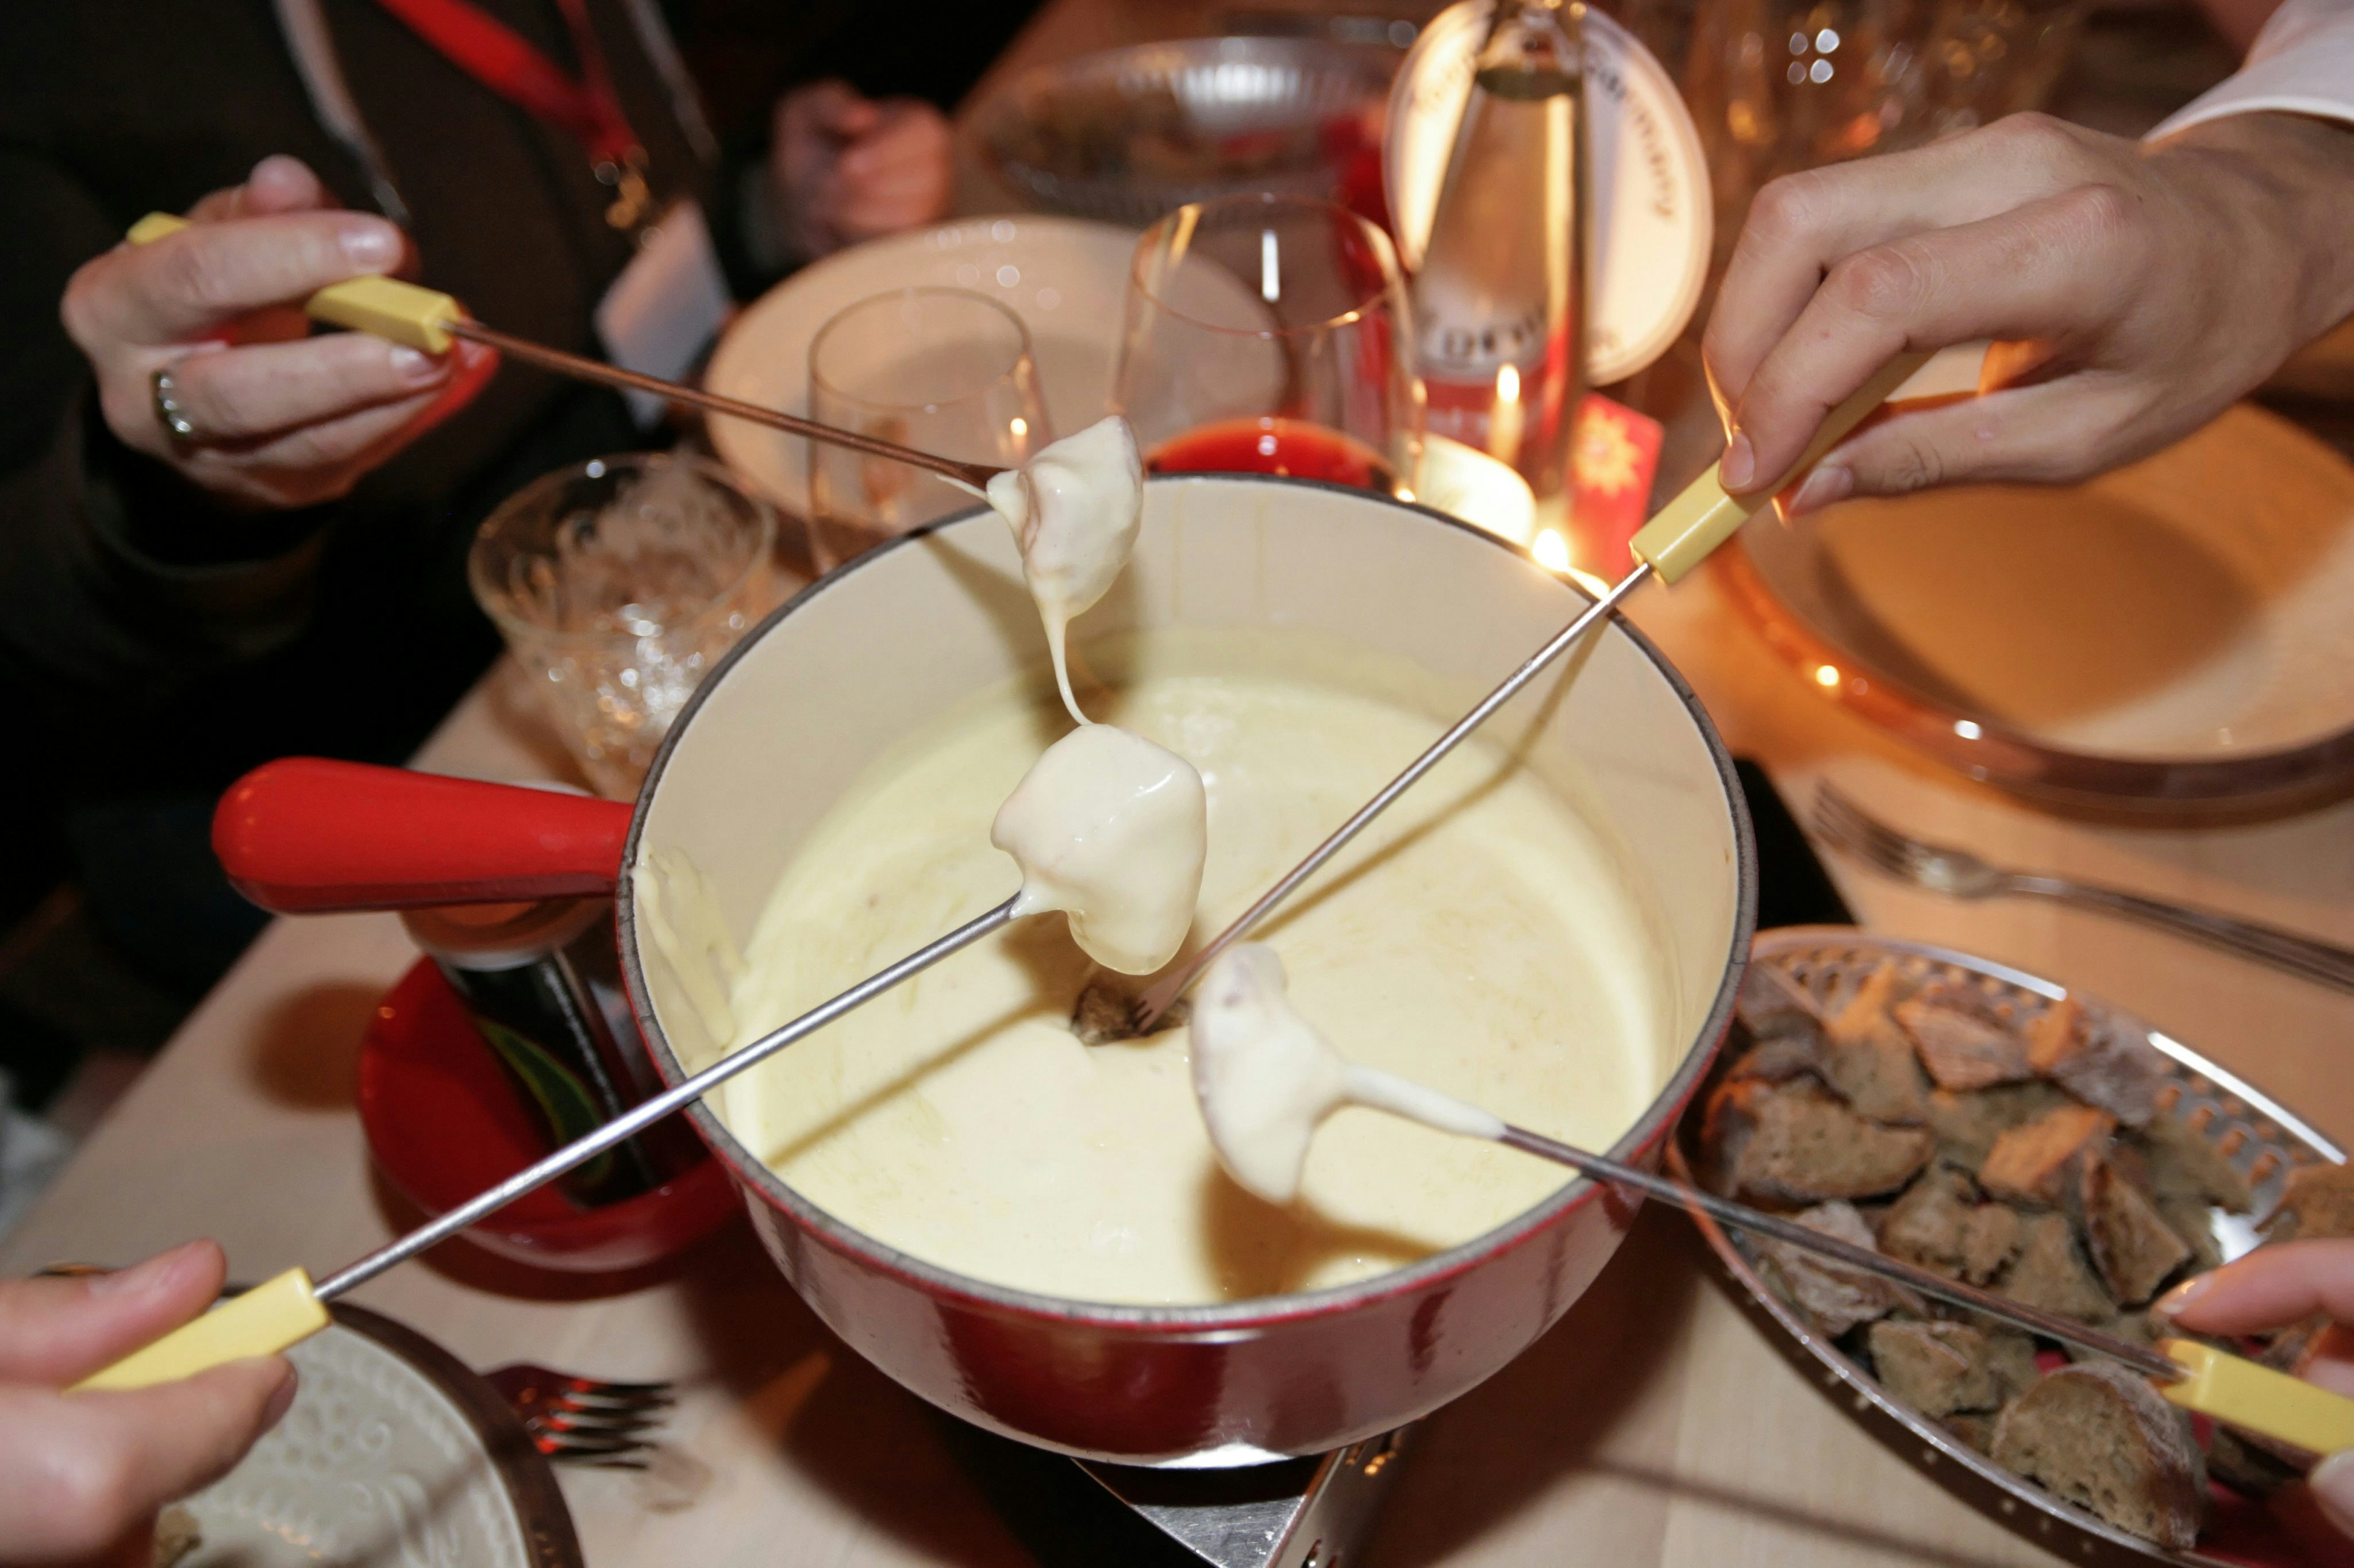 Flera matgäster doppar brödbitar i en läcker ostfondue med fondugafflar av trä och metall.  Osten är vit och smält och fondugrytan är omgiven av mindre fat och glas rött vin 